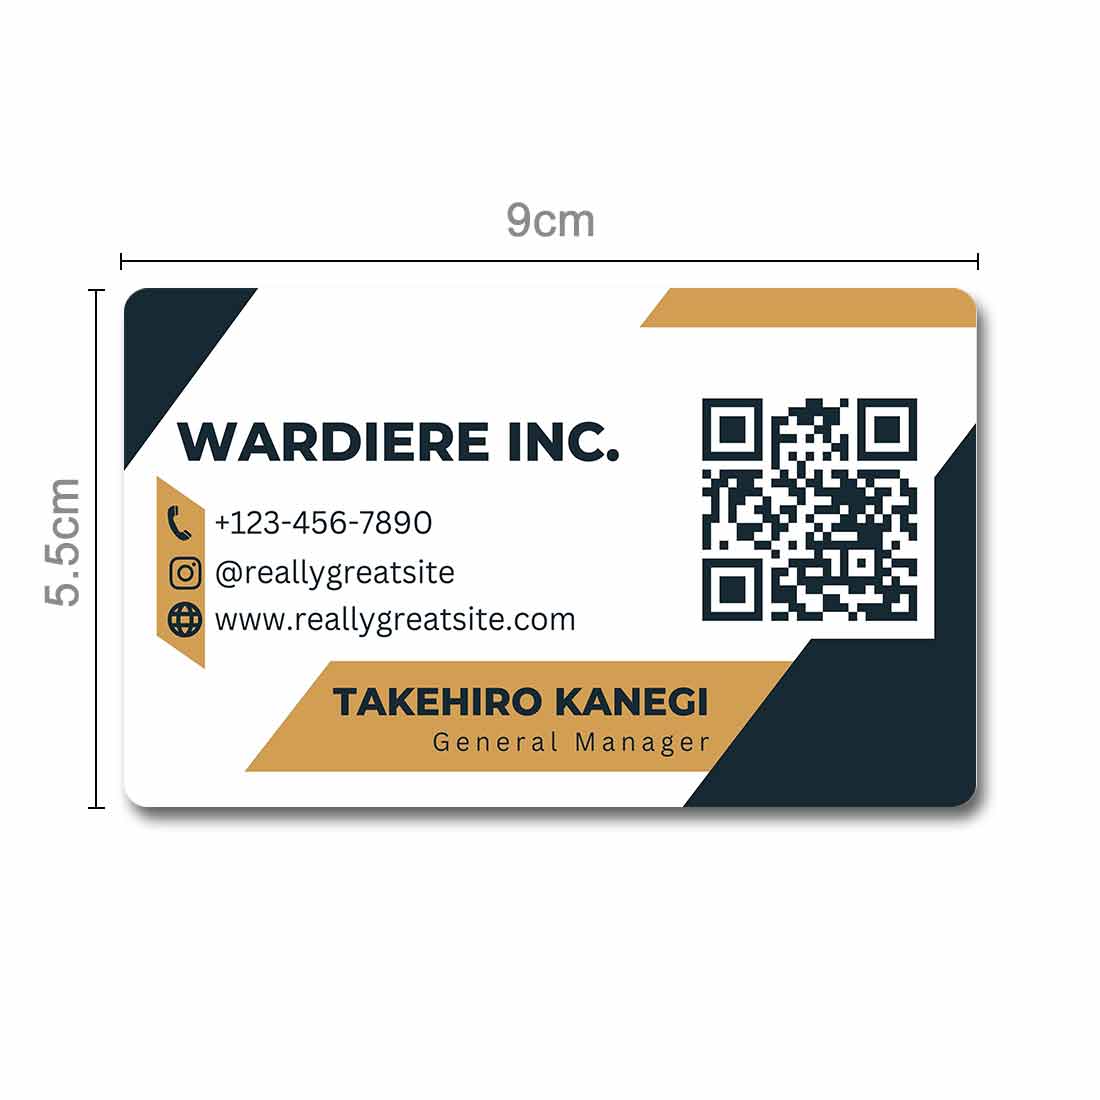 make a qr code business card